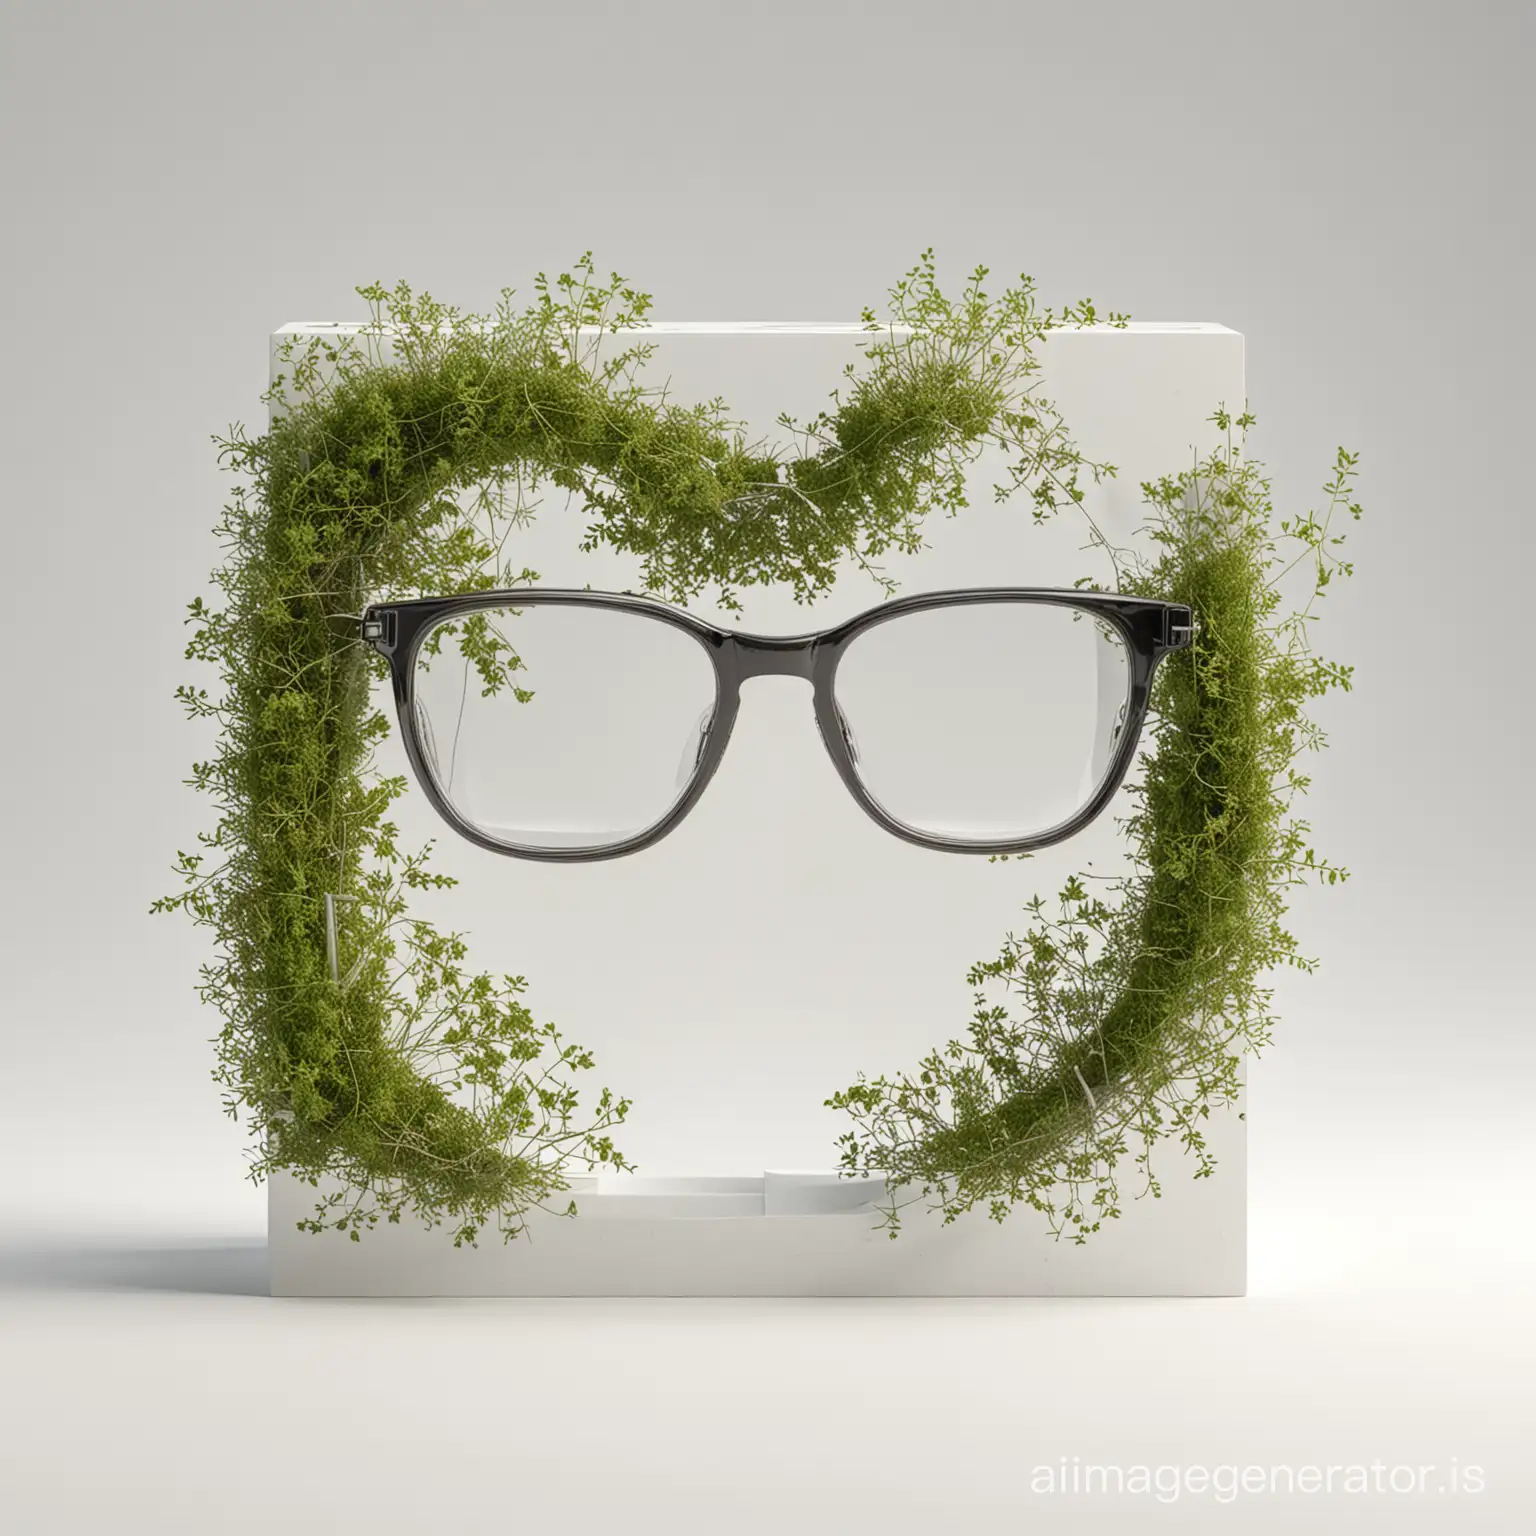 Minimalist-Eyeglasses-Composition-on-White-Background